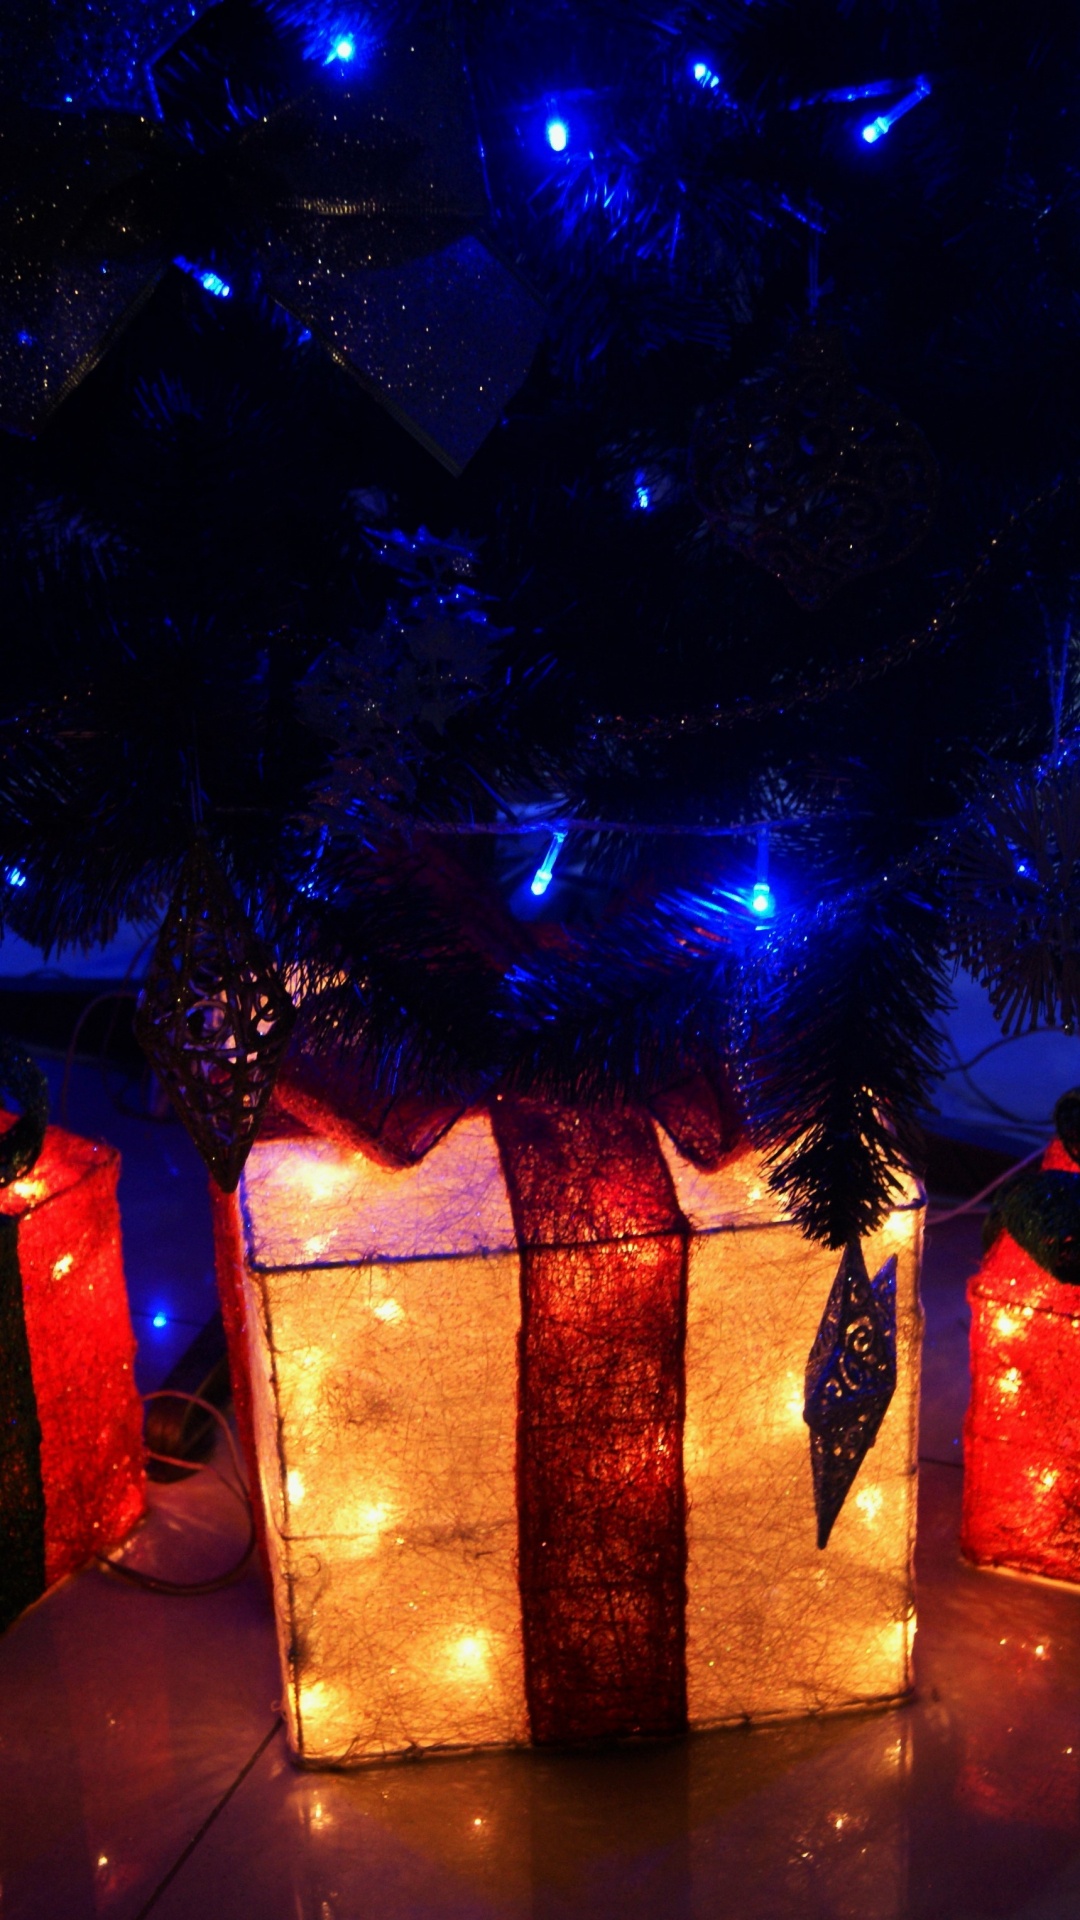 Licht, Weihnachtsbeleuchtung, Neujahr, Weihnachten, Neujahr Baum. Wallpaper in 1080x1920 Resolution